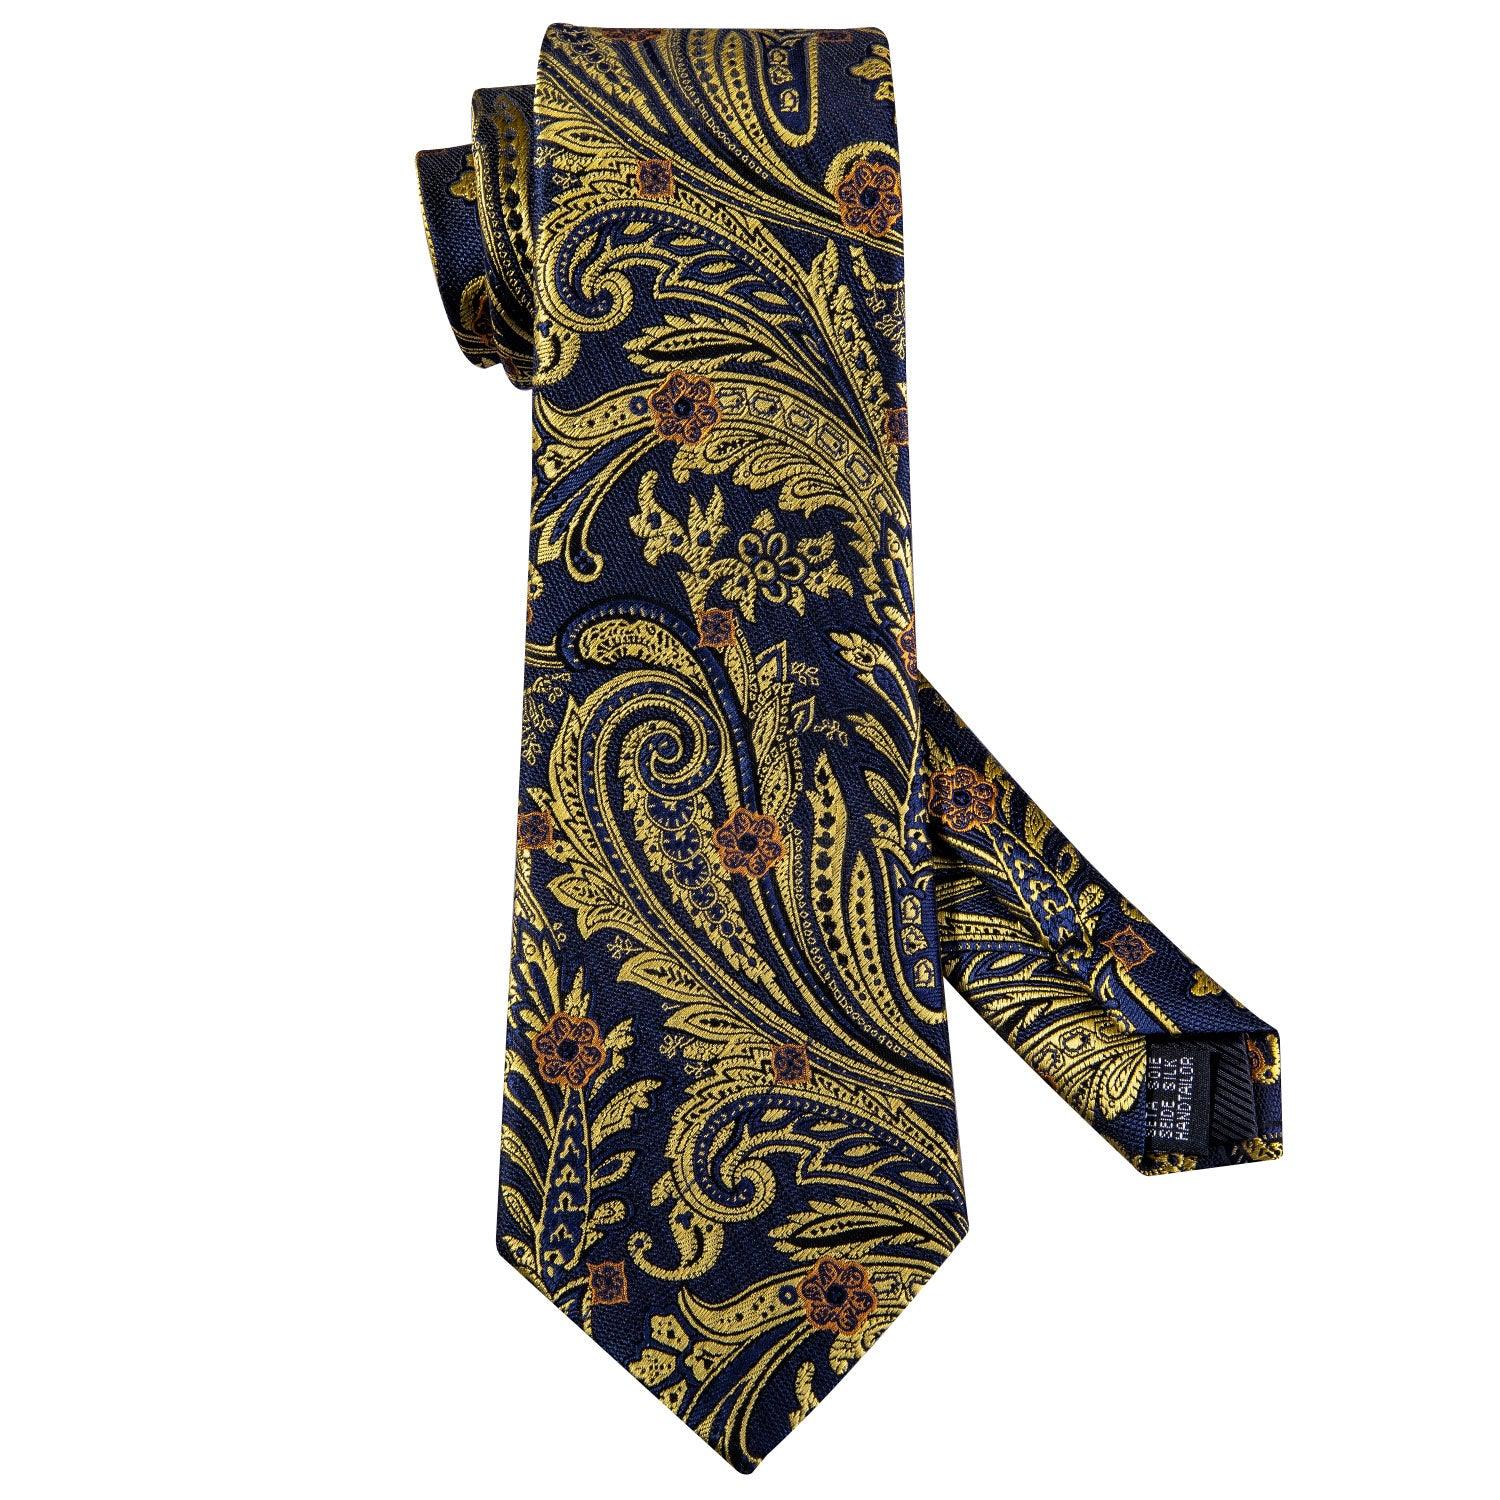 Black Gold Floral Silk Tie Pocket Square Cufflink Set - STYLETIE